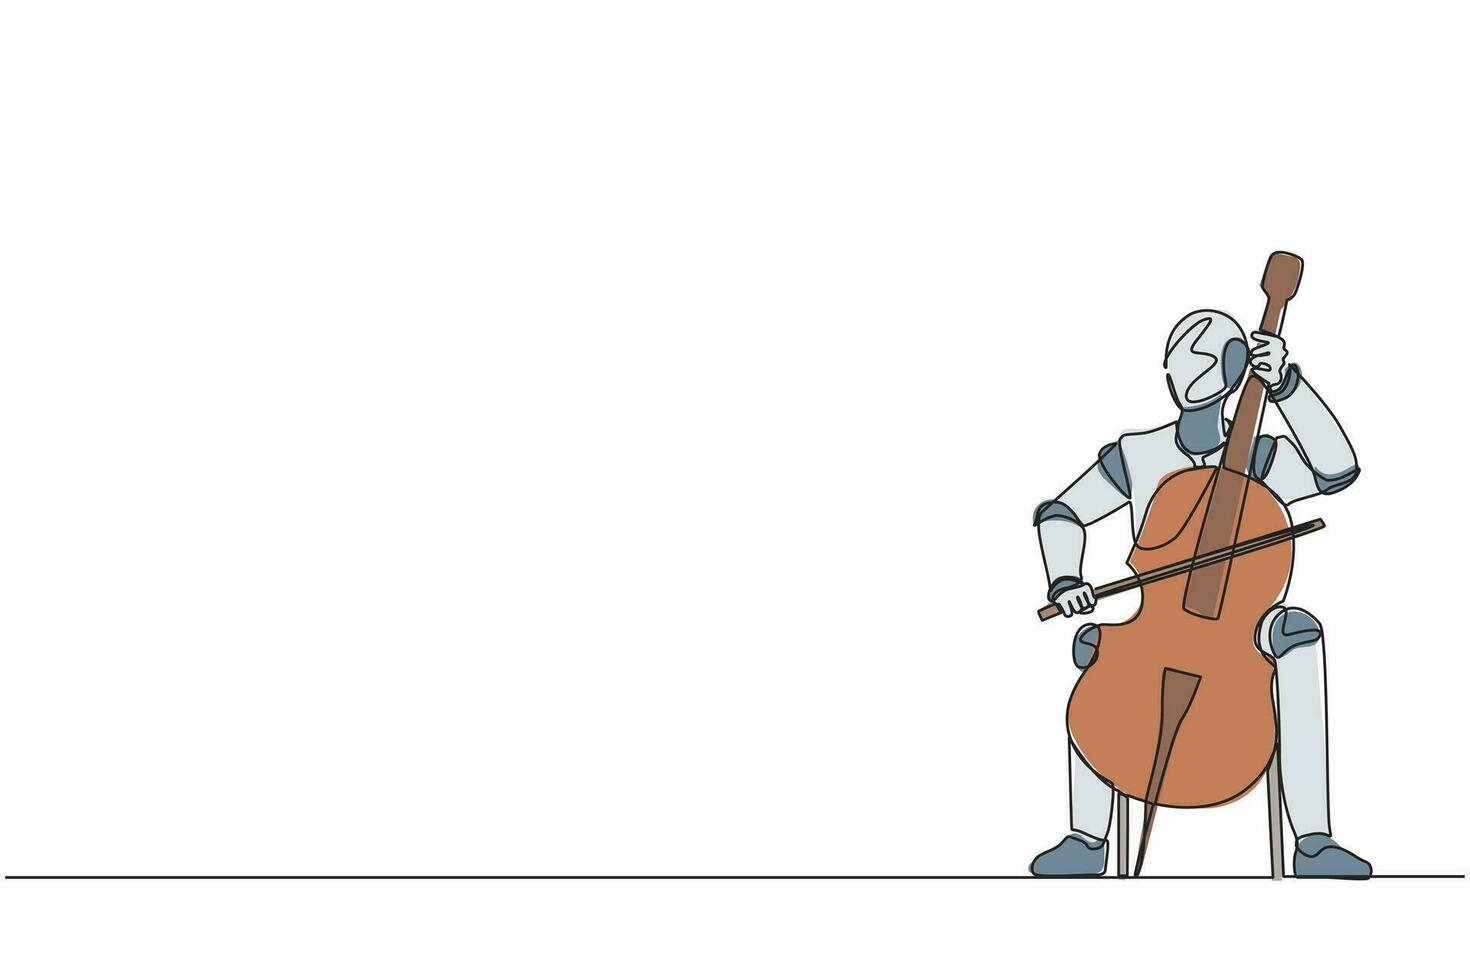 Ein Strichzeichnungsroboter, der Saitenkontrabass oder Cello spielt. zukünftige Technologieentwicklung. künstliche Intelligenz und maschinelles Lernen. ununterbrochene Linie zeichnen grafische Vektorillustration des Designs vektor